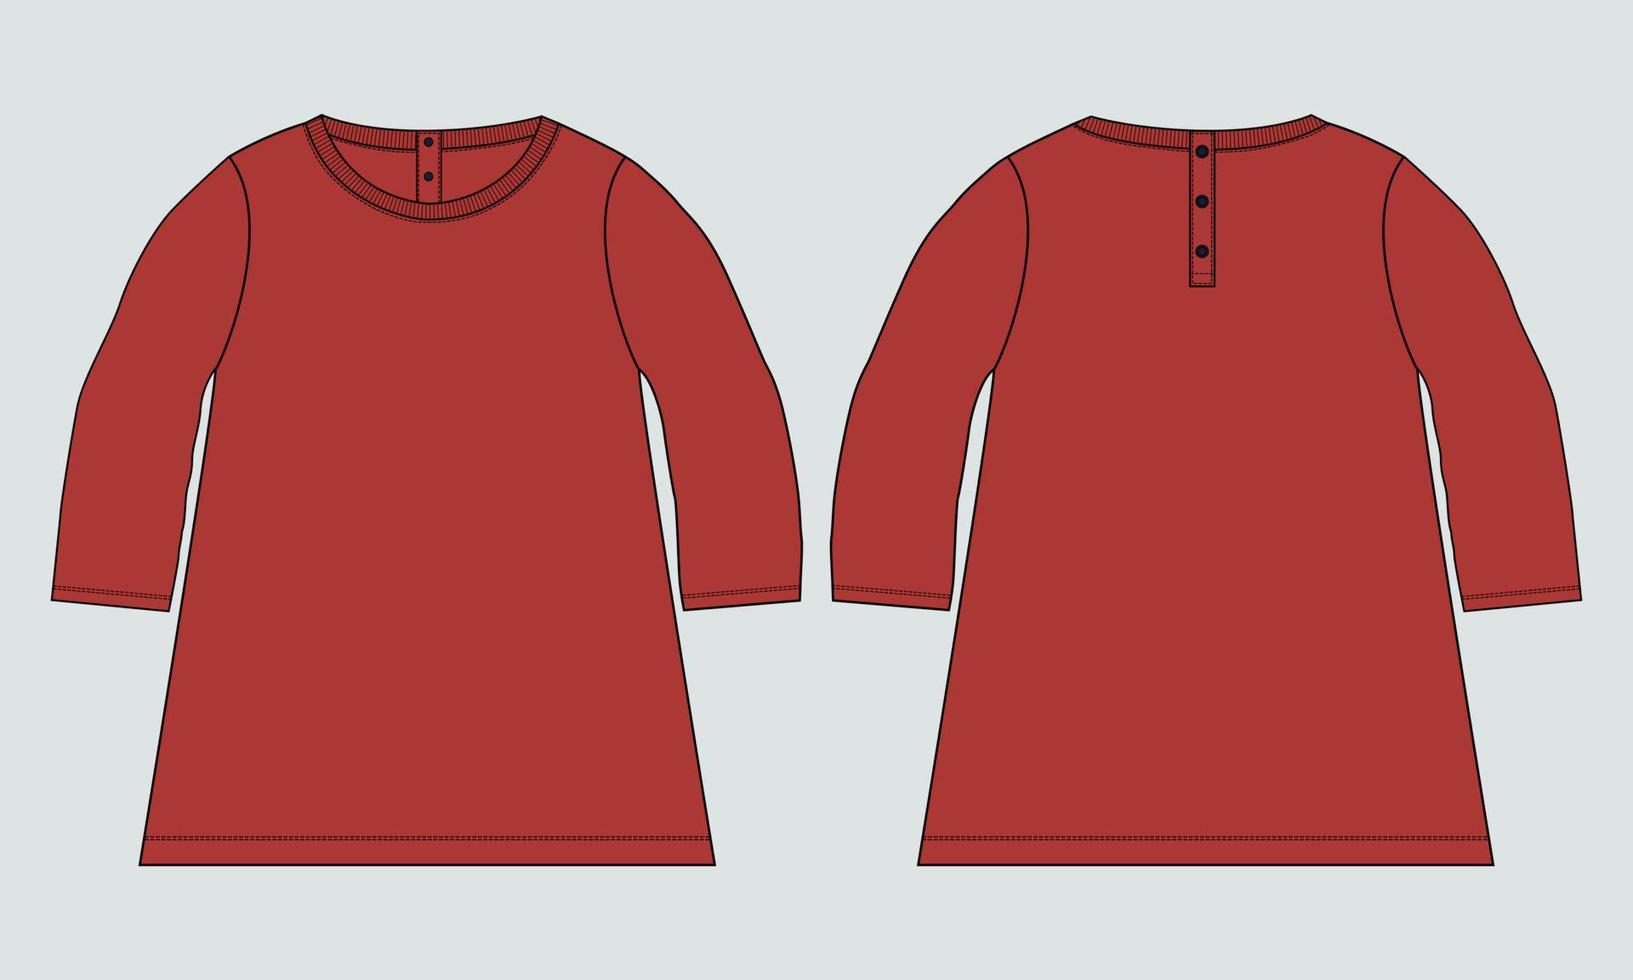 Langarm mit Rundhalsausschnitt, T-Shirt-Tops, Kleiderdesign für Kinder und Damen. technische mode flache skizze bekleidung vektor illustration vorlage vorder- und rückansichten.